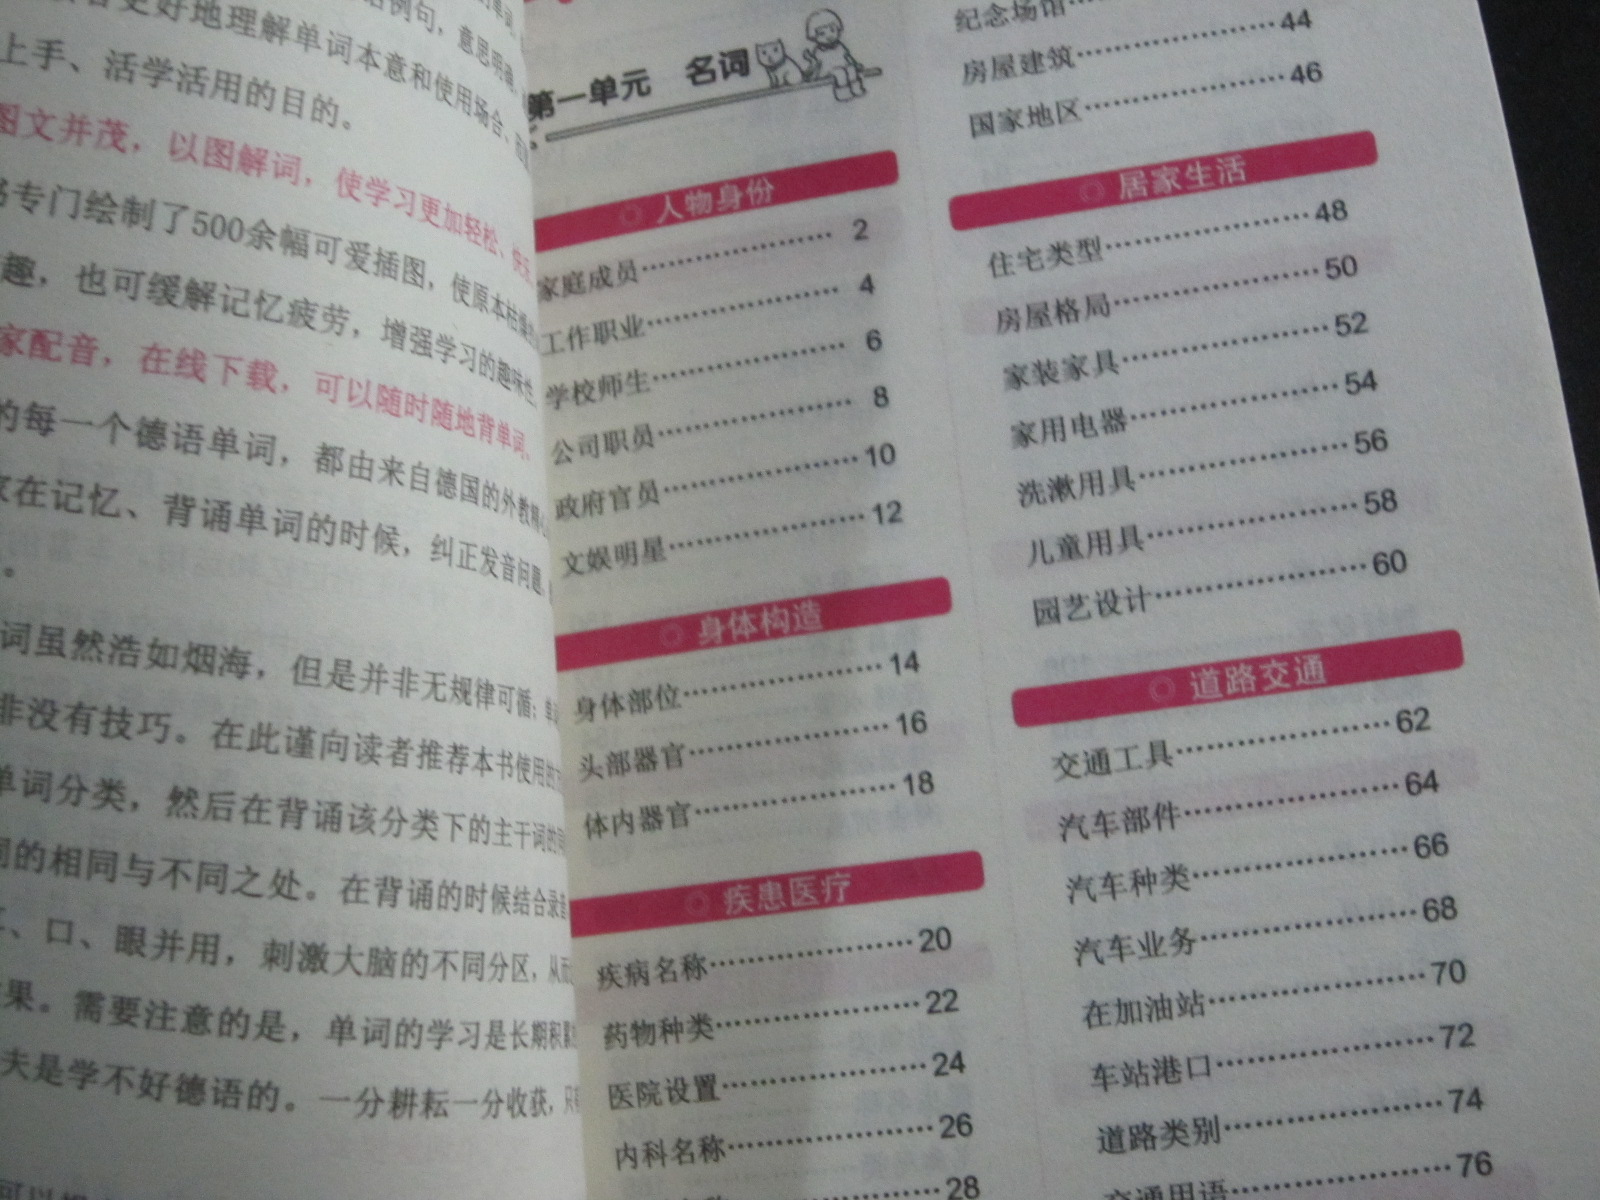 中国宇航出版社于2013年推出的“使用频率最高1+1系列”中的一册，是一本实用性超强的单词背诵书。本书收录7000余个生活中最常用的德语单词，分名词、动词、形容词和副词等部分，细化归纳为25大类、143个主题。本书的特点为分类汇总+联想记忆，有助于读者快速掌握德语常用单词。内容全面，收入词汇量较大　　挑选7000余个日常生活中使用频率最高的德语单词，所需单词一网打尽。分类记忆，完整细致　　细化近150个主题，涵盖各类场景，列出关联词，提高学习效率。选取例句，所学单词学以致用　　精选日常交流中使用频率最高的例句，即刻上手，活学活用。生动易读，学习更轻松　　以图解词，缓解记忆疲劳，使原本枯燥的单词记忆变得生动有趣。专家配音，随时随地背单词　　聘请专业德国外教录制音频，感受纯正地道的德语发音。ganz Auge und Ohr sein 密切注意 【例句】Schon nach enigen Minuten waren die Kinder ganz Auge und Ohr und folgten gebannt dem Spiel. 【翻译】孩子们已经聚精会神于这个游戏好几分钟了。 单词记忆本三分，阴、阳、中，每次背单词前把新单词抄写到单词本上。炒好后开始按照某个固定顺序来背，比如我是“das,der,die”（这个按每个人的想法来排），每次背单单词我都按照这个顺序，时间长了就会习惯，看到单词你会有种印象，它是先背的还是后背的，是der还是die还有就是固定思维记忆，比如你背Tisch（桌子）的时候就想他是男的（der），然后他就是男的了，不是女的，不是中性，是男的，就不会错了还有就是自己尝试归纳，月亮（Mond）是阳性，太阳（Sonne）反而是阴性。又比如-e结尾一般复数词尾加n，-ung结尾复数加-en等还有，可以进行想象的记忆。See译作湖的时候是der，译作海的时候是die，可以想象成“海洋母亲”。刚开始只能死记硬背，没有捷径可走，为了记忆深刻可以自己摸索些比较形象的方法帮助记忆，适合自己的就是最好的。贵在坚持，当有一天你发现其中有很多规律可循的时候，你就知道，其实德语单词很好背的。